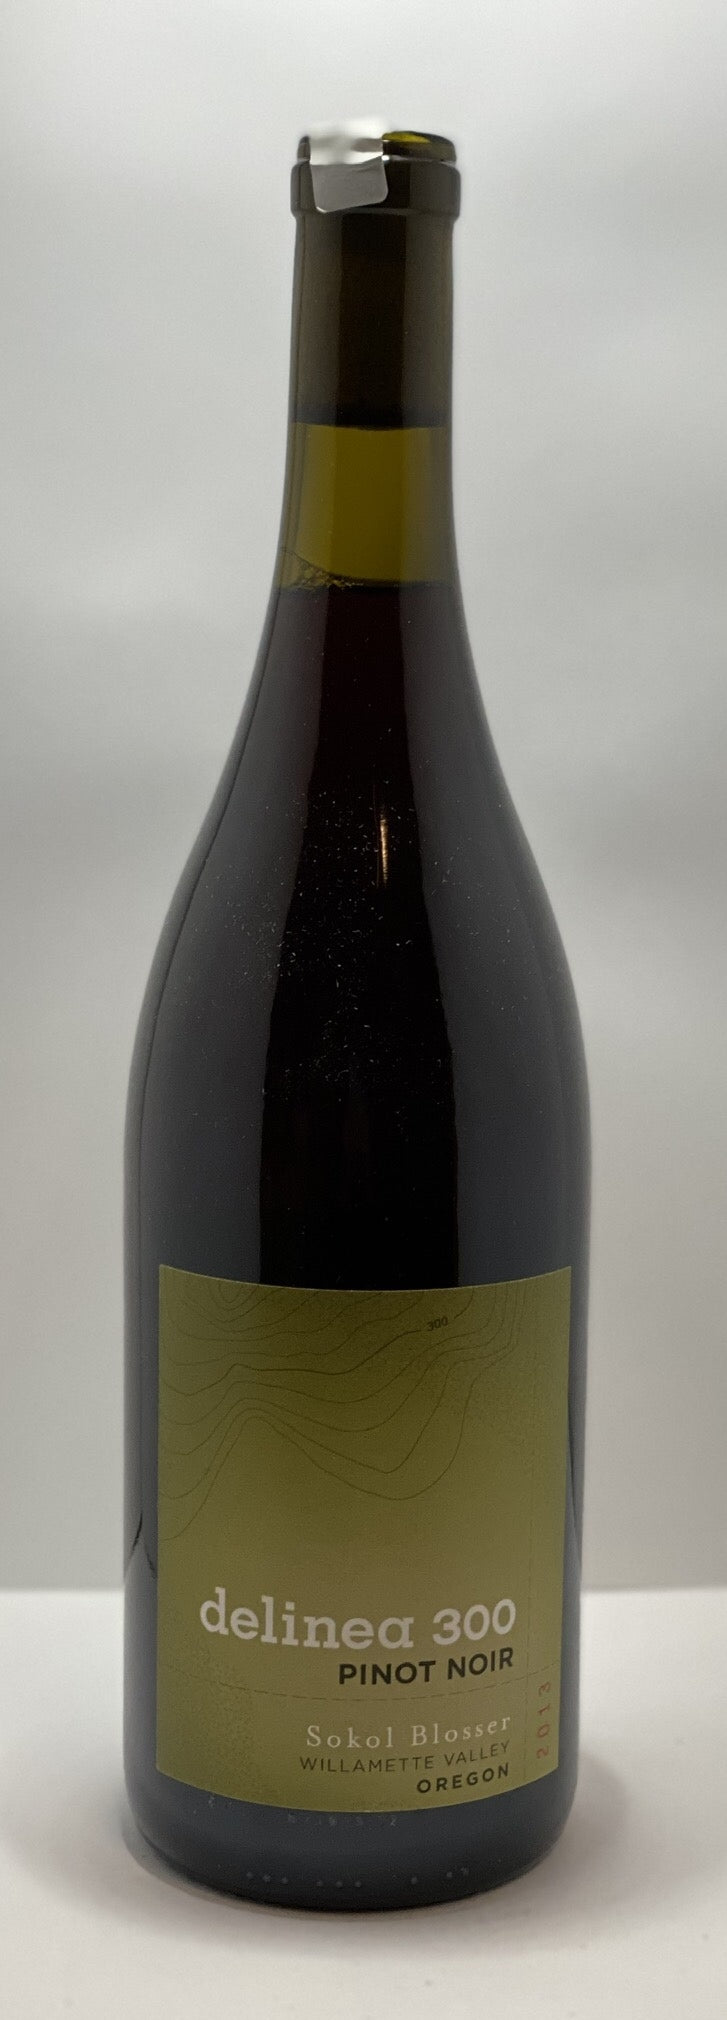 2013 Delinea 300 Pinot Noir